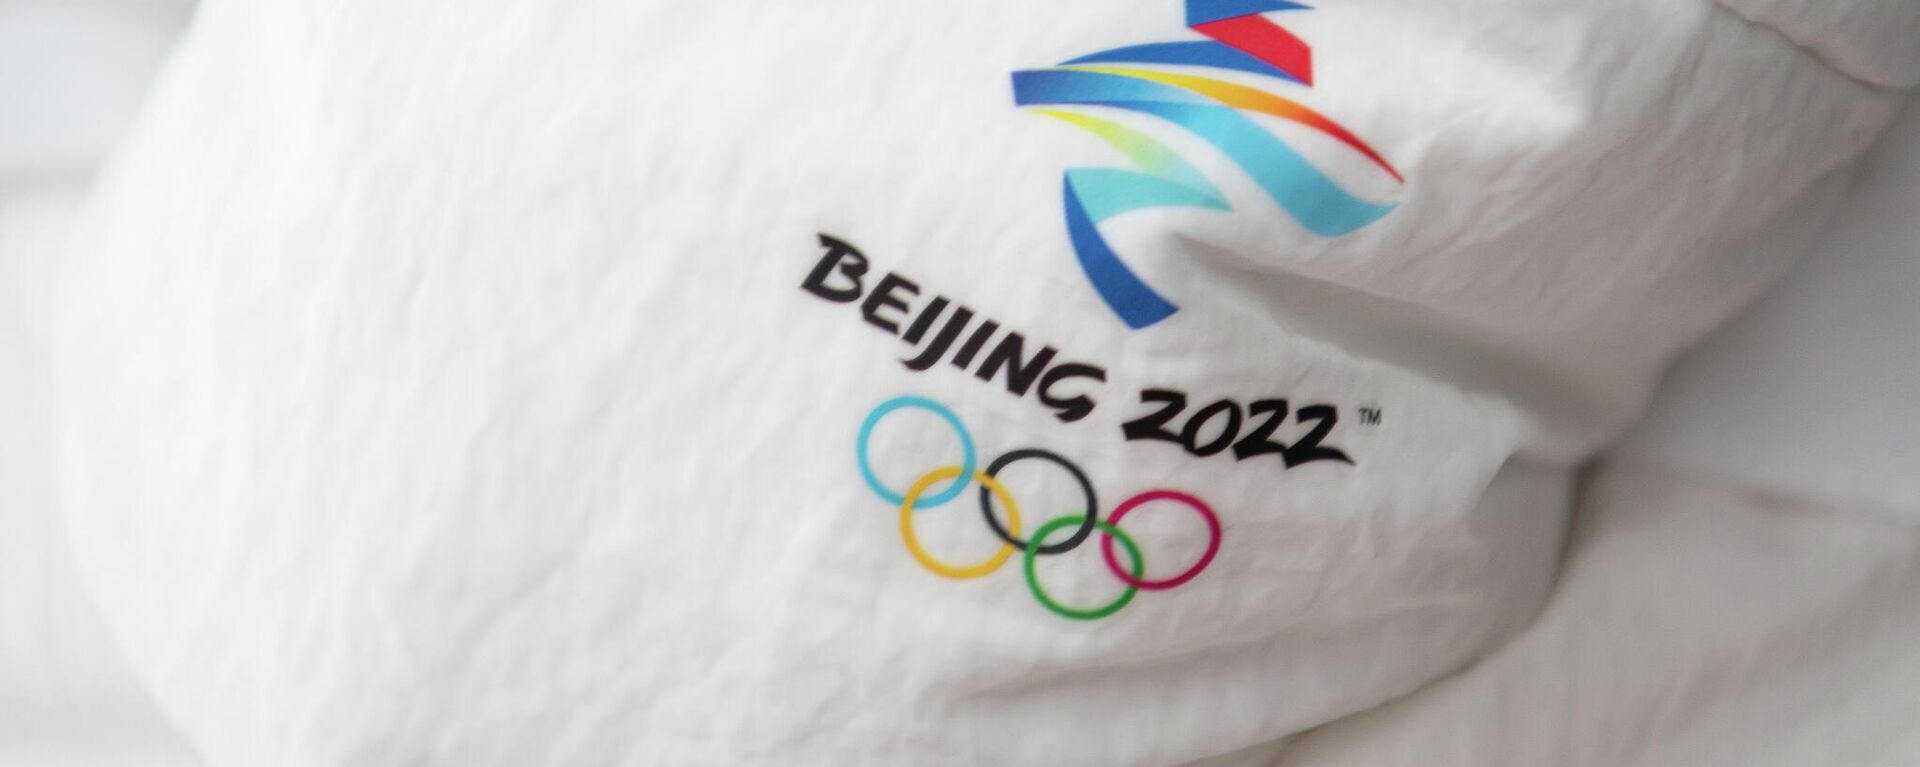 Вторая группа латвийских спортсменов отправилась на Олимпийские игры в Пекин - Sputnik Латвия, 1920, 05.02.2022